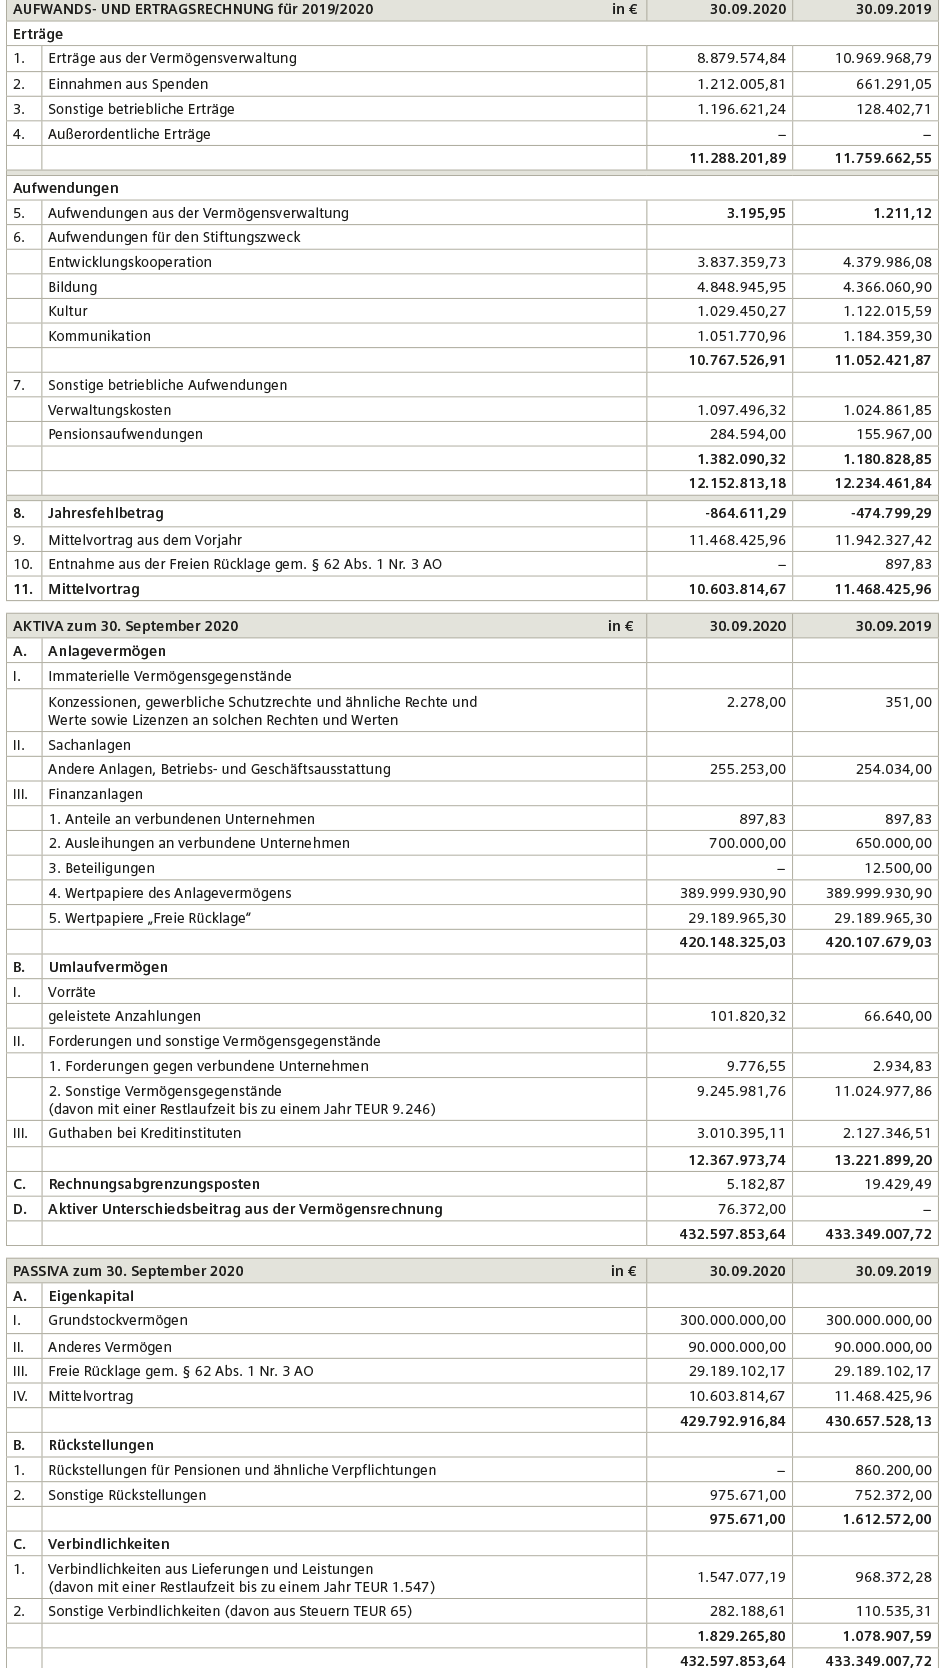 stiftung-finanzbericht-2019-grafik-de